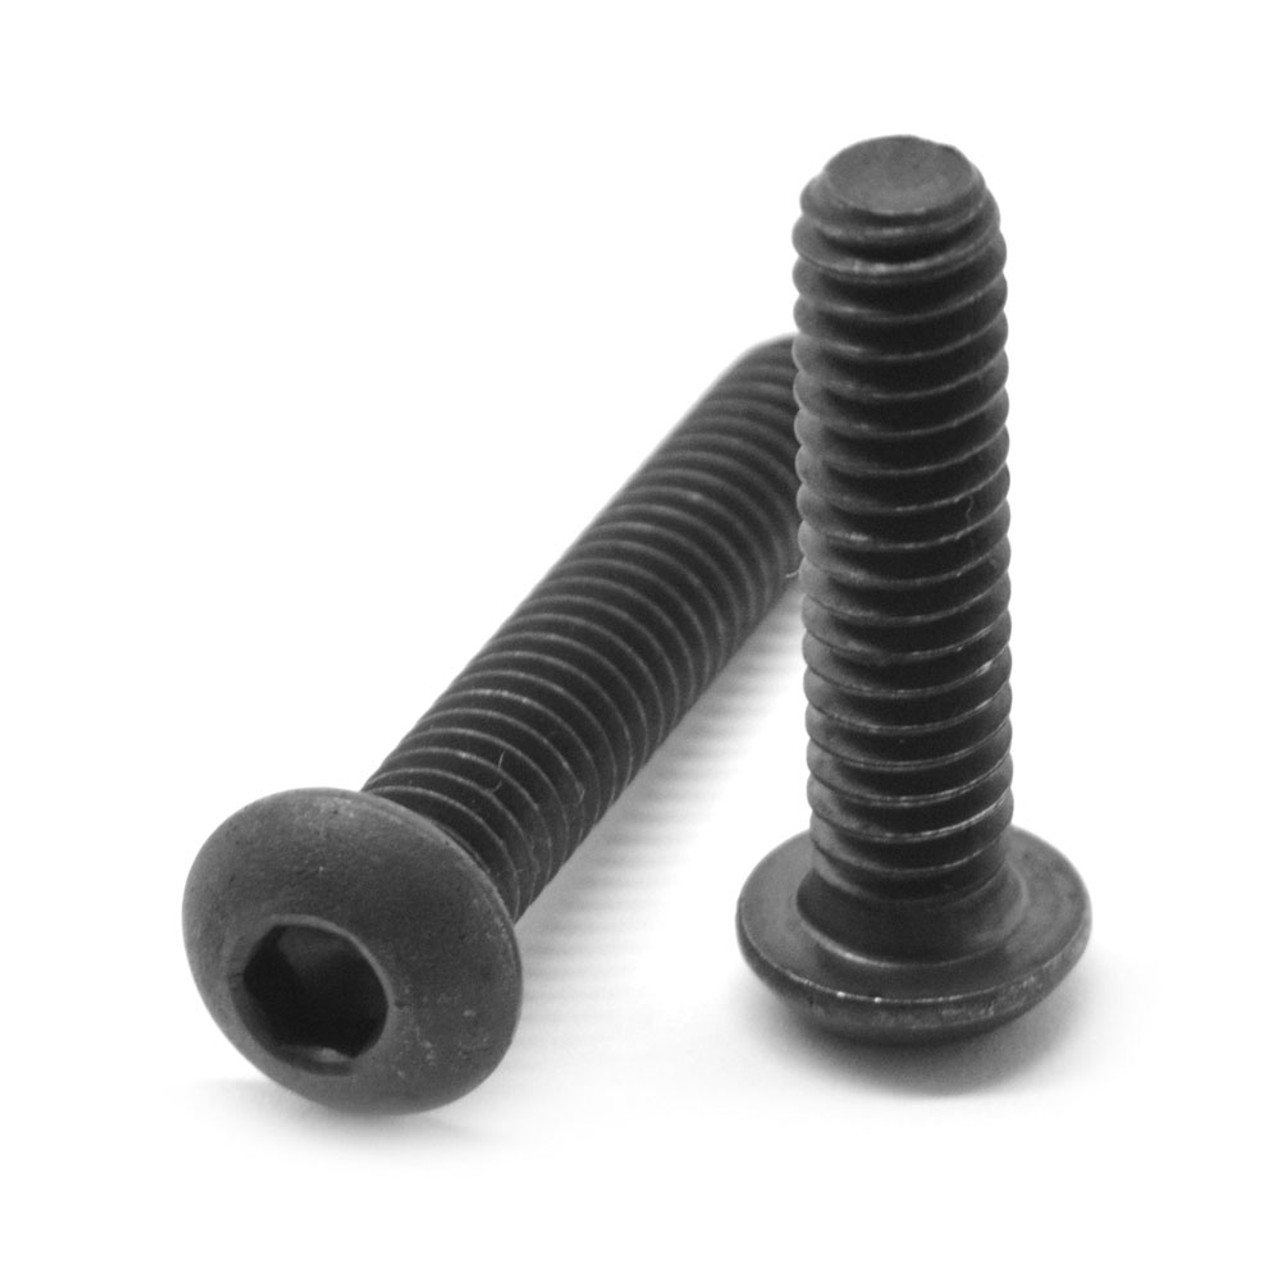 #6-32 x 3/16" (FT) Coarse Thread Socket Button Head Cap Screw Alloy Steel Black Oxide